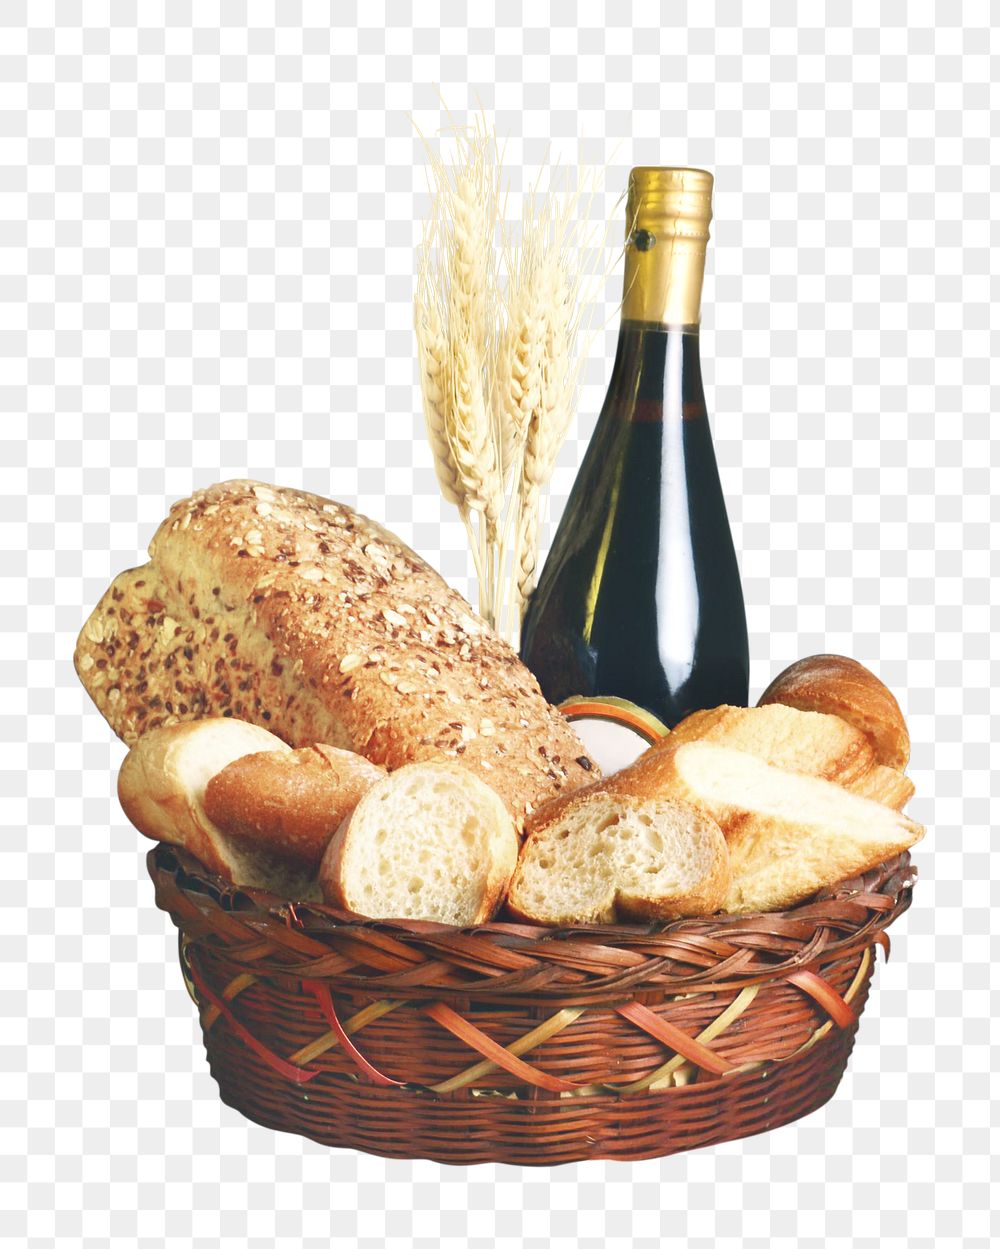 Bread basket png, collage element, transparent background